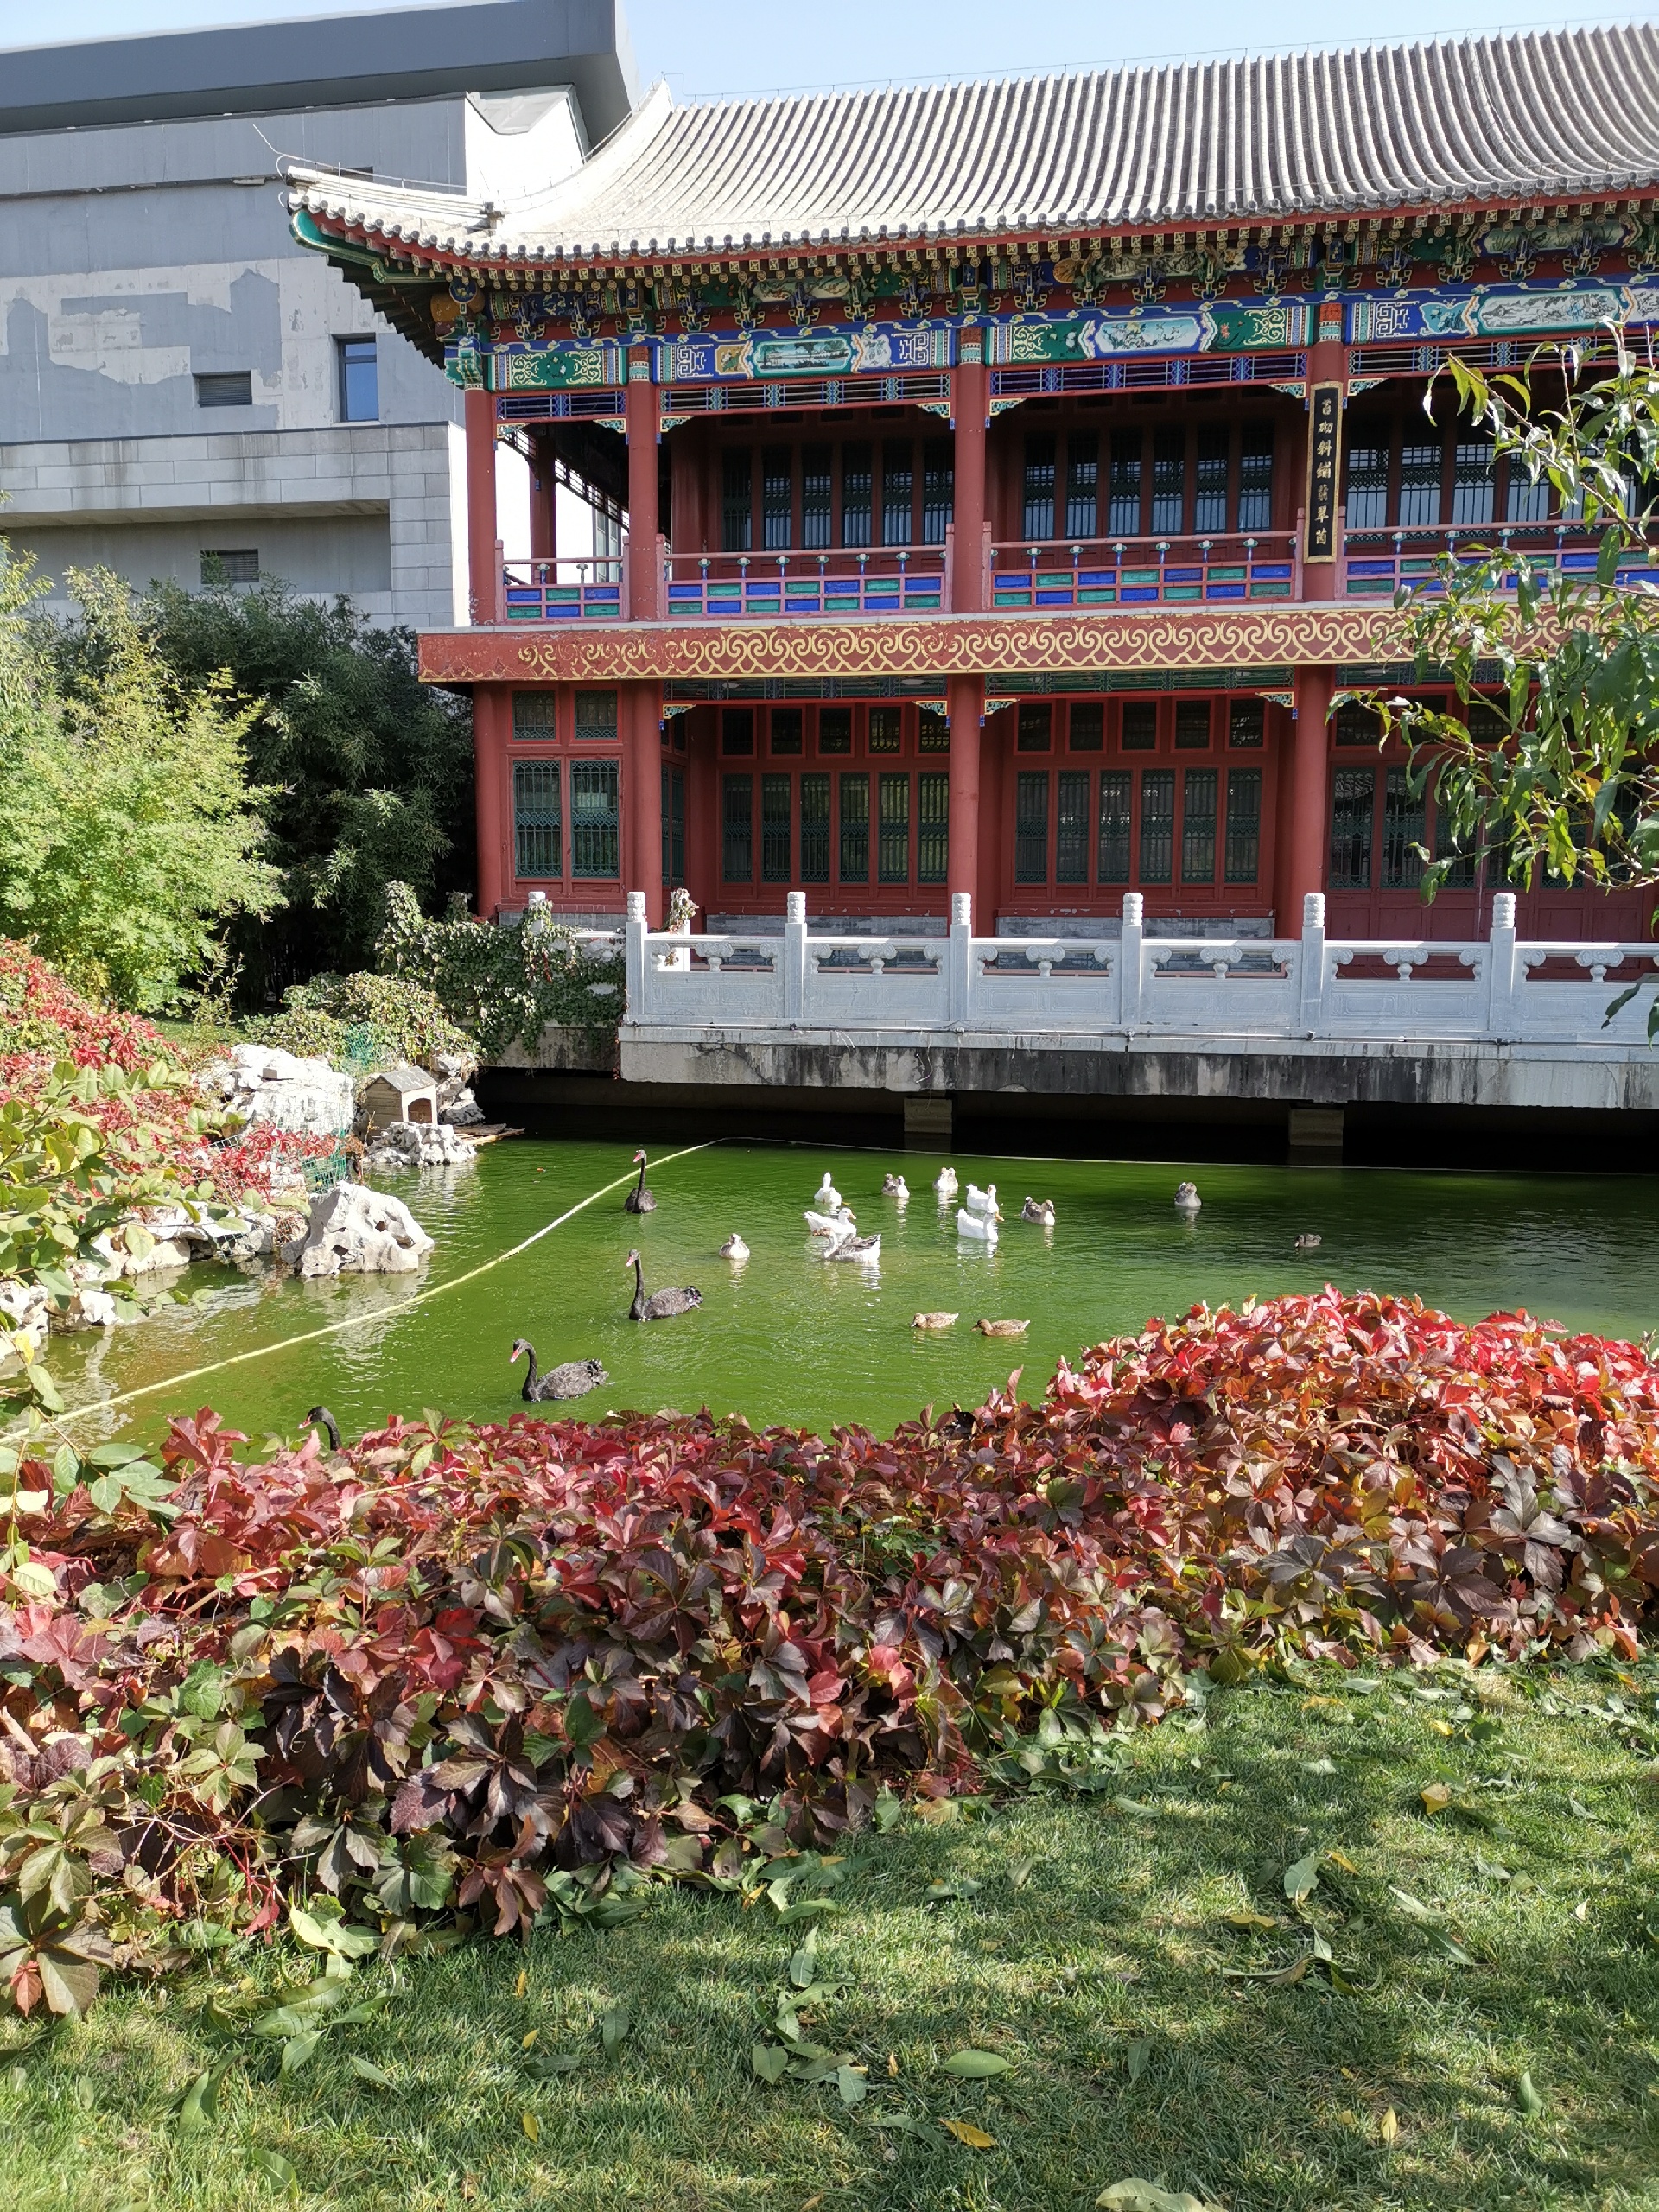 中国园林博物馆-停车场免费，需要关注公众号预约，有室内和室外